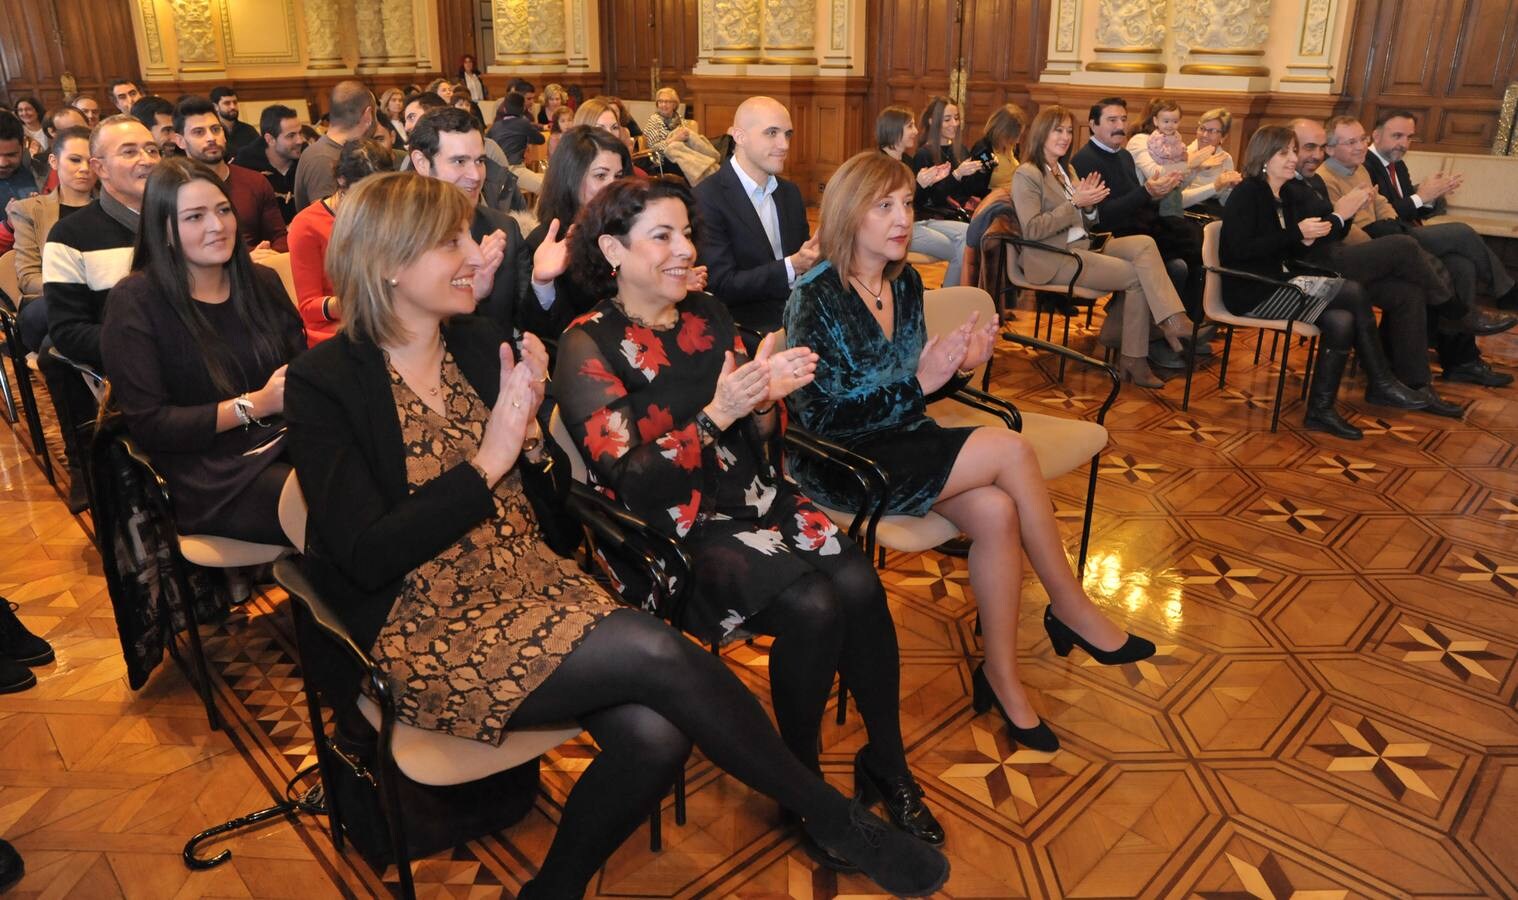 Toma de posesión de nuevos funcionarios en el Ayuntamiento de Valladolid